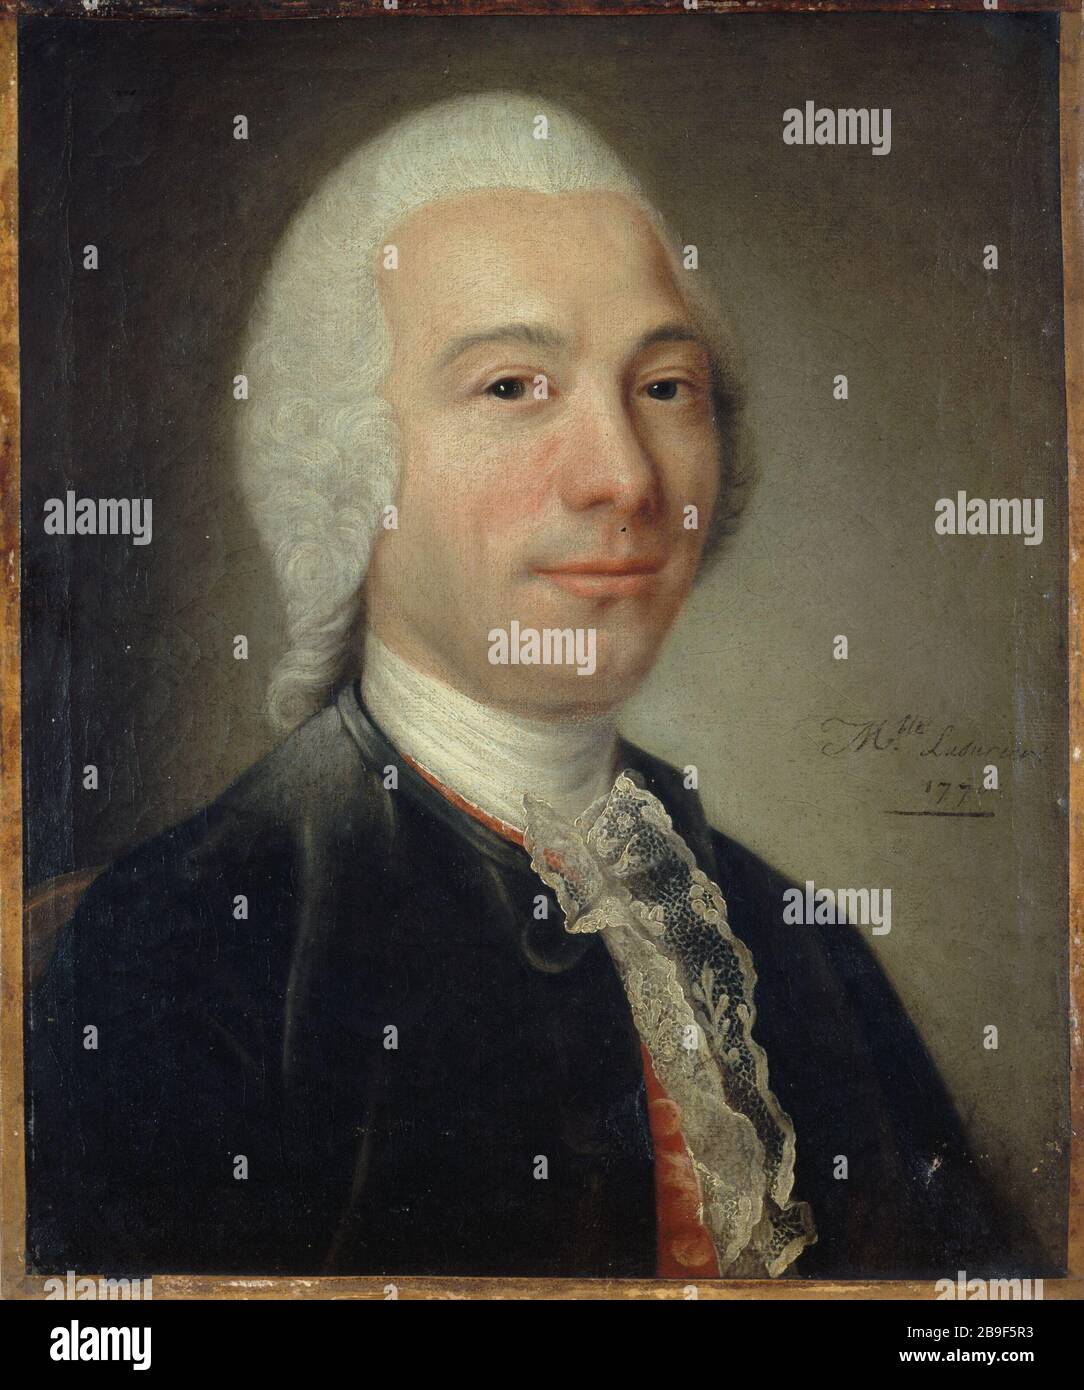 CATHERINE LUSURIER - UOMO RITRATTO Catherine Lusurier. Portrait d'homme, autrefois identifié comme d'Alembert, 1770. Huile sur toile. Parigi, musée Carnavalet. Foto Stock